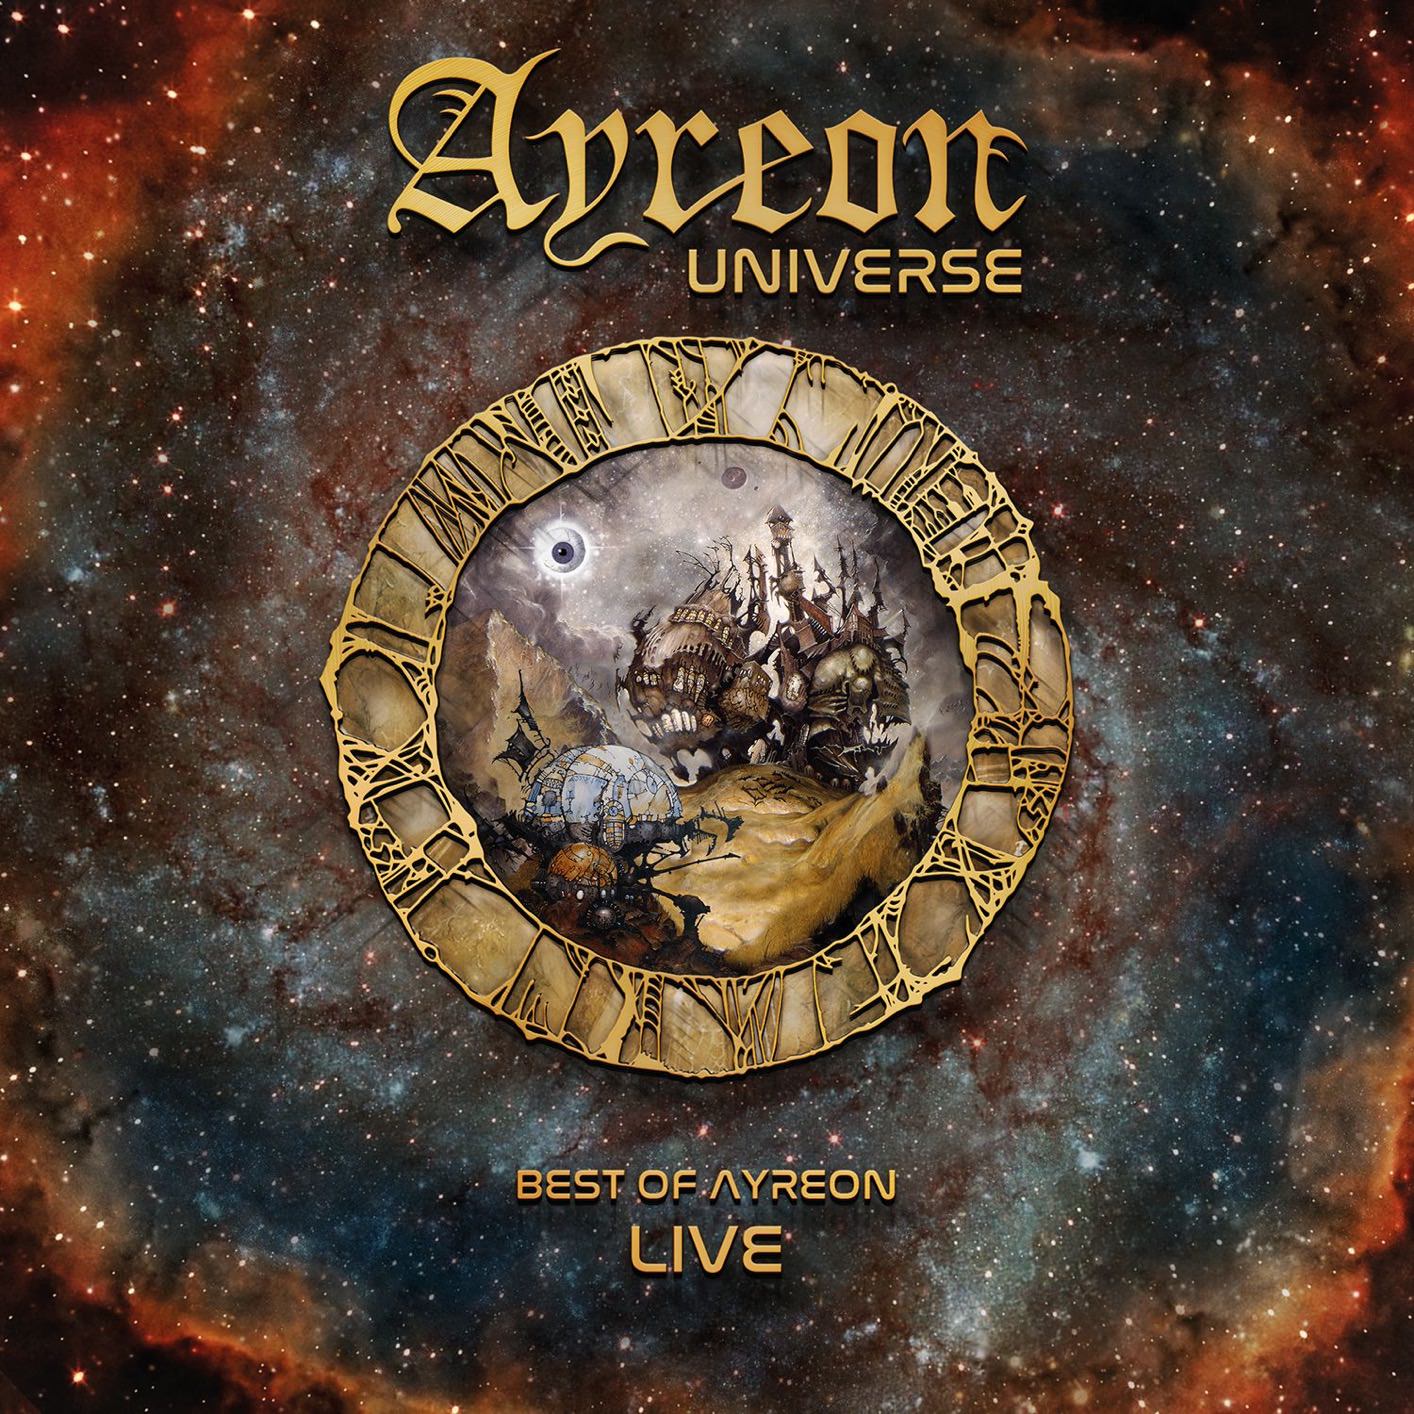 Ayreon – Ayreon Universe (2018) [Qobuz FLAC 24bit/48kHz]